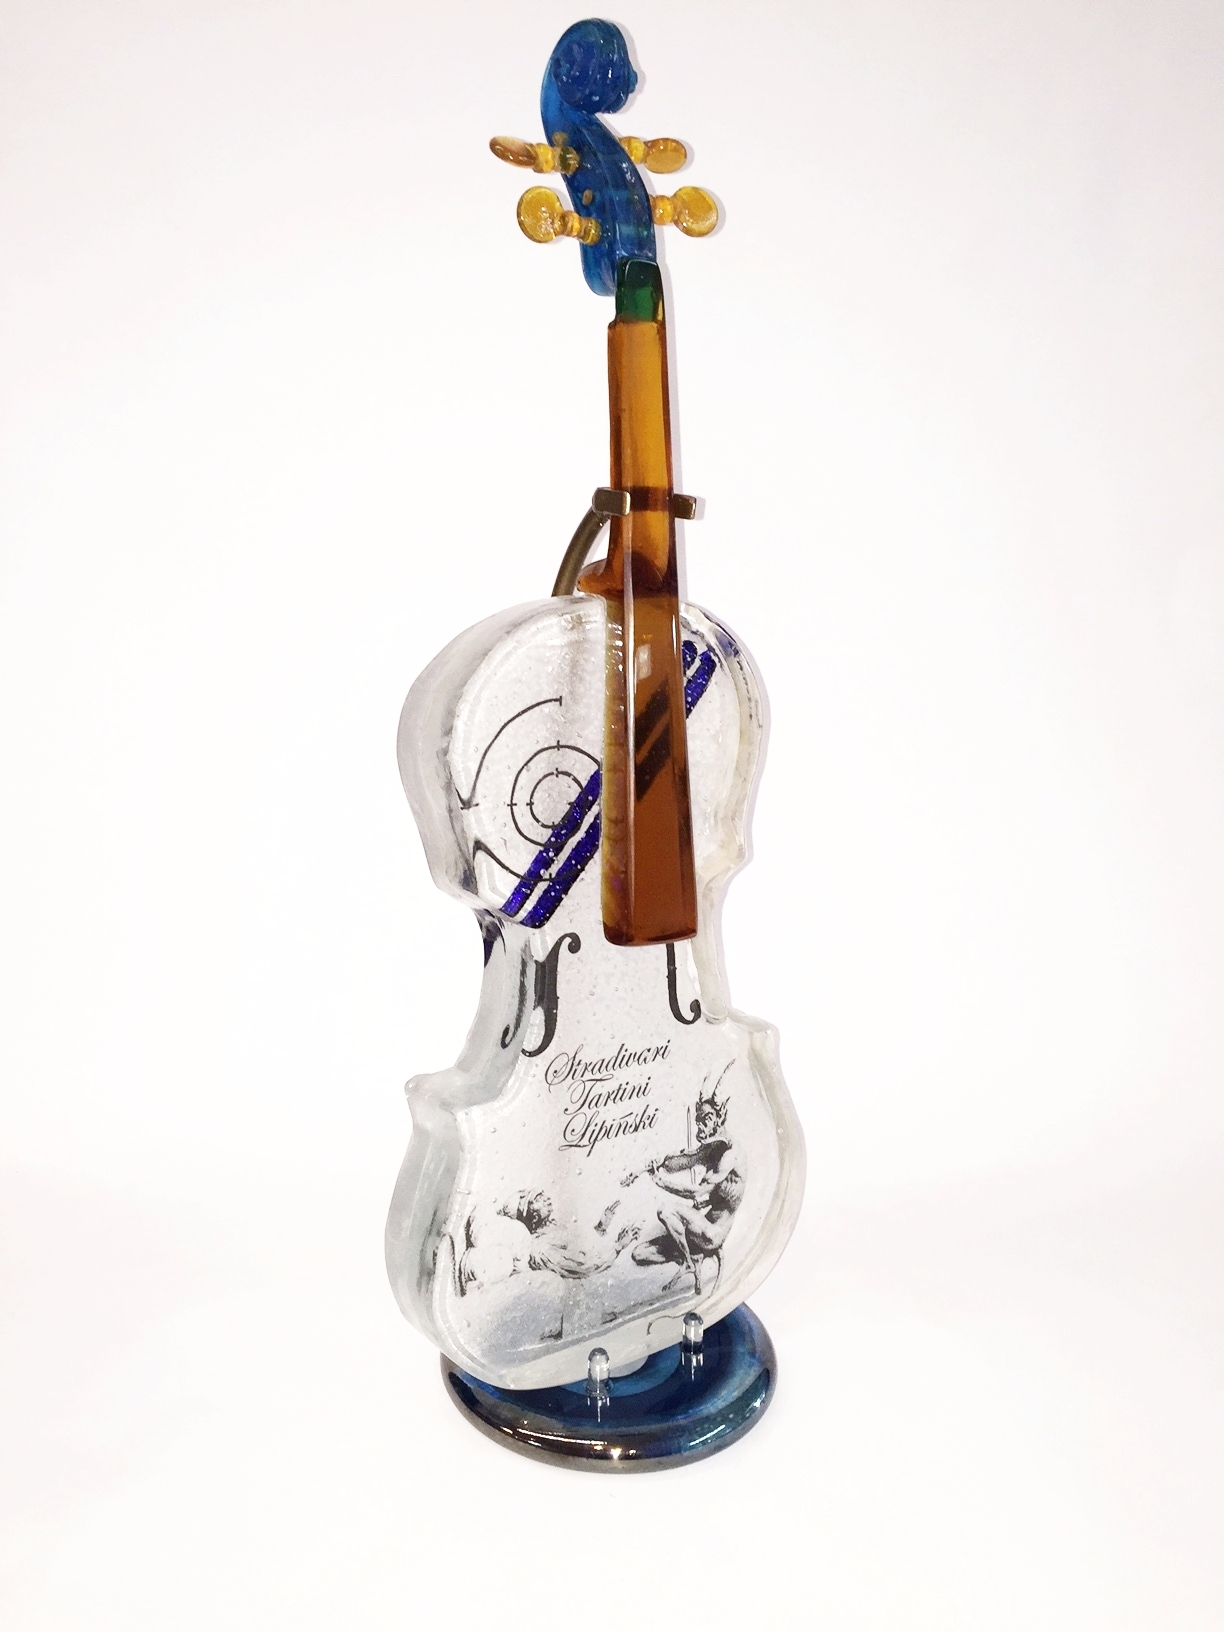 "the Stradivarius Caper"